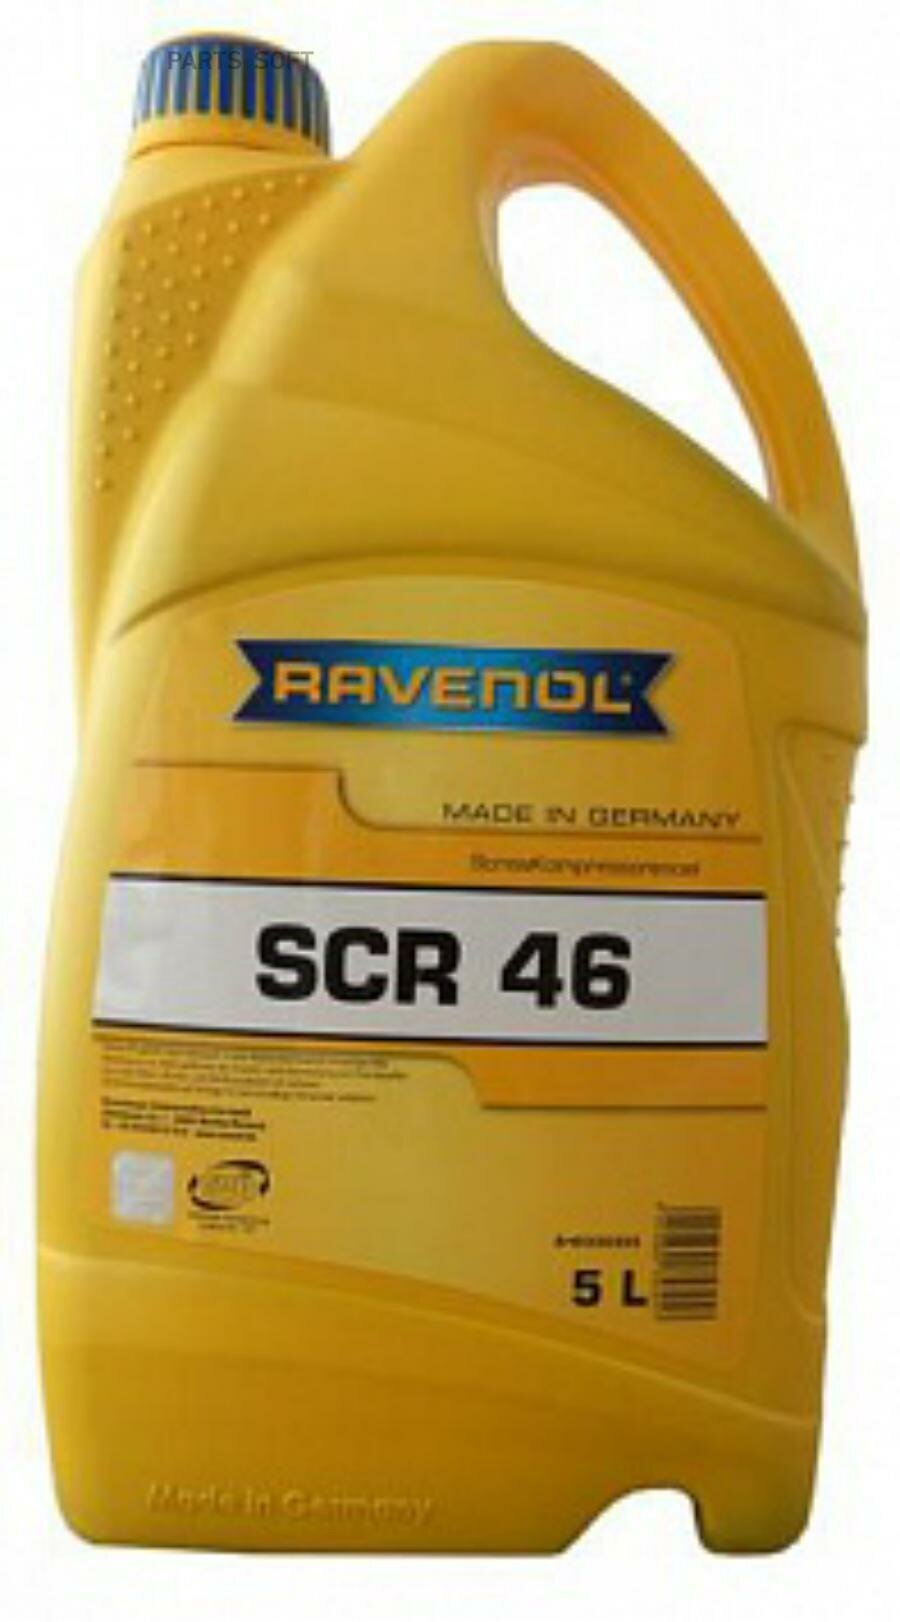 RAVENOL   Ravenol Kompressorenoel screew scr 46, , 5L 4014835757257